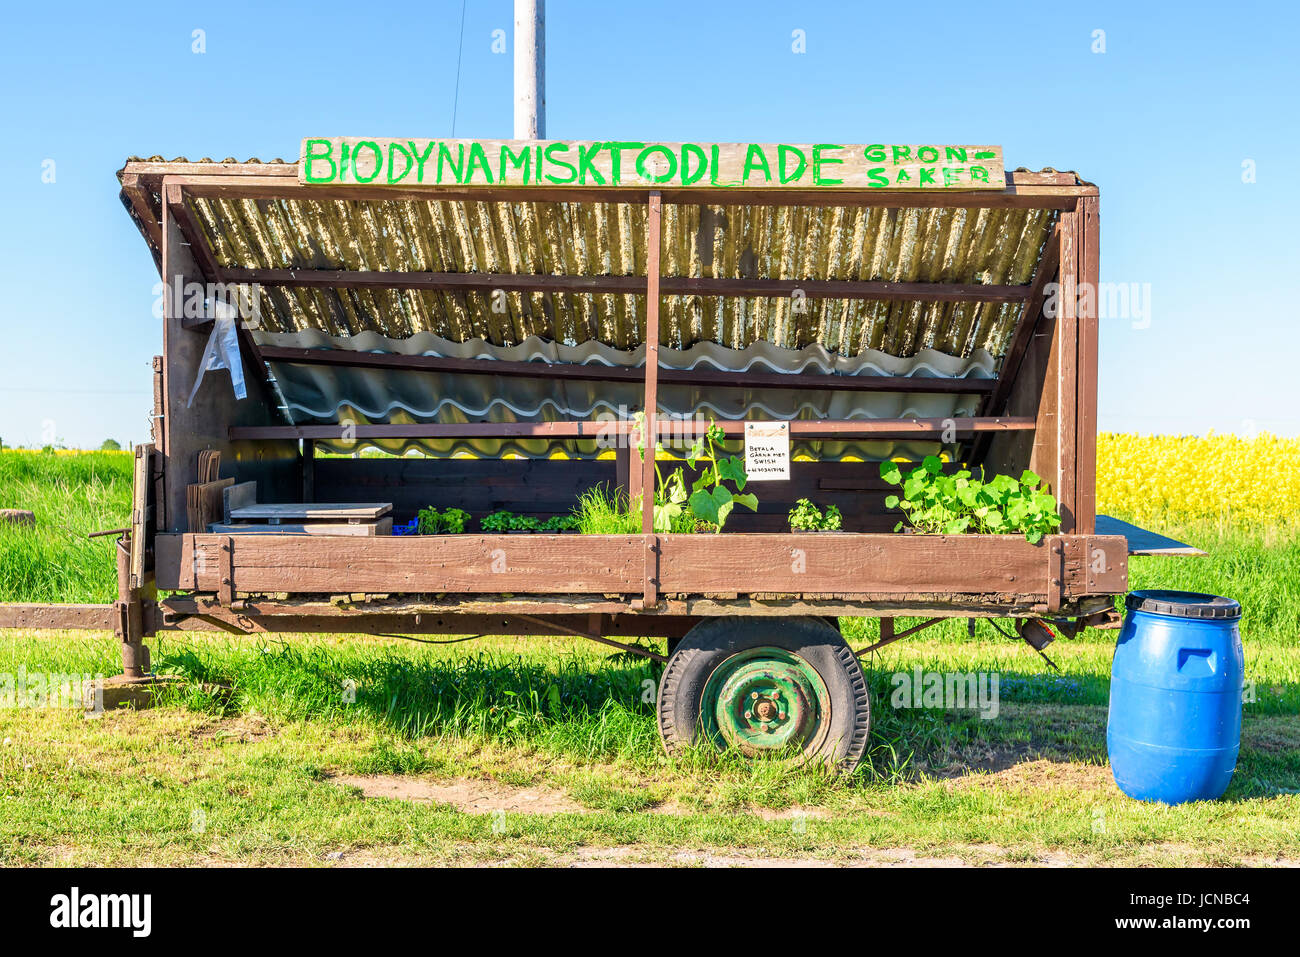 Öland, Suecia - 28 de mayo de 2017: Documental Ambiental. No tripulados vegetal desatendida o kiosco en el pequeño remolque vendiendo orgánica y productos locales. Foto de stock